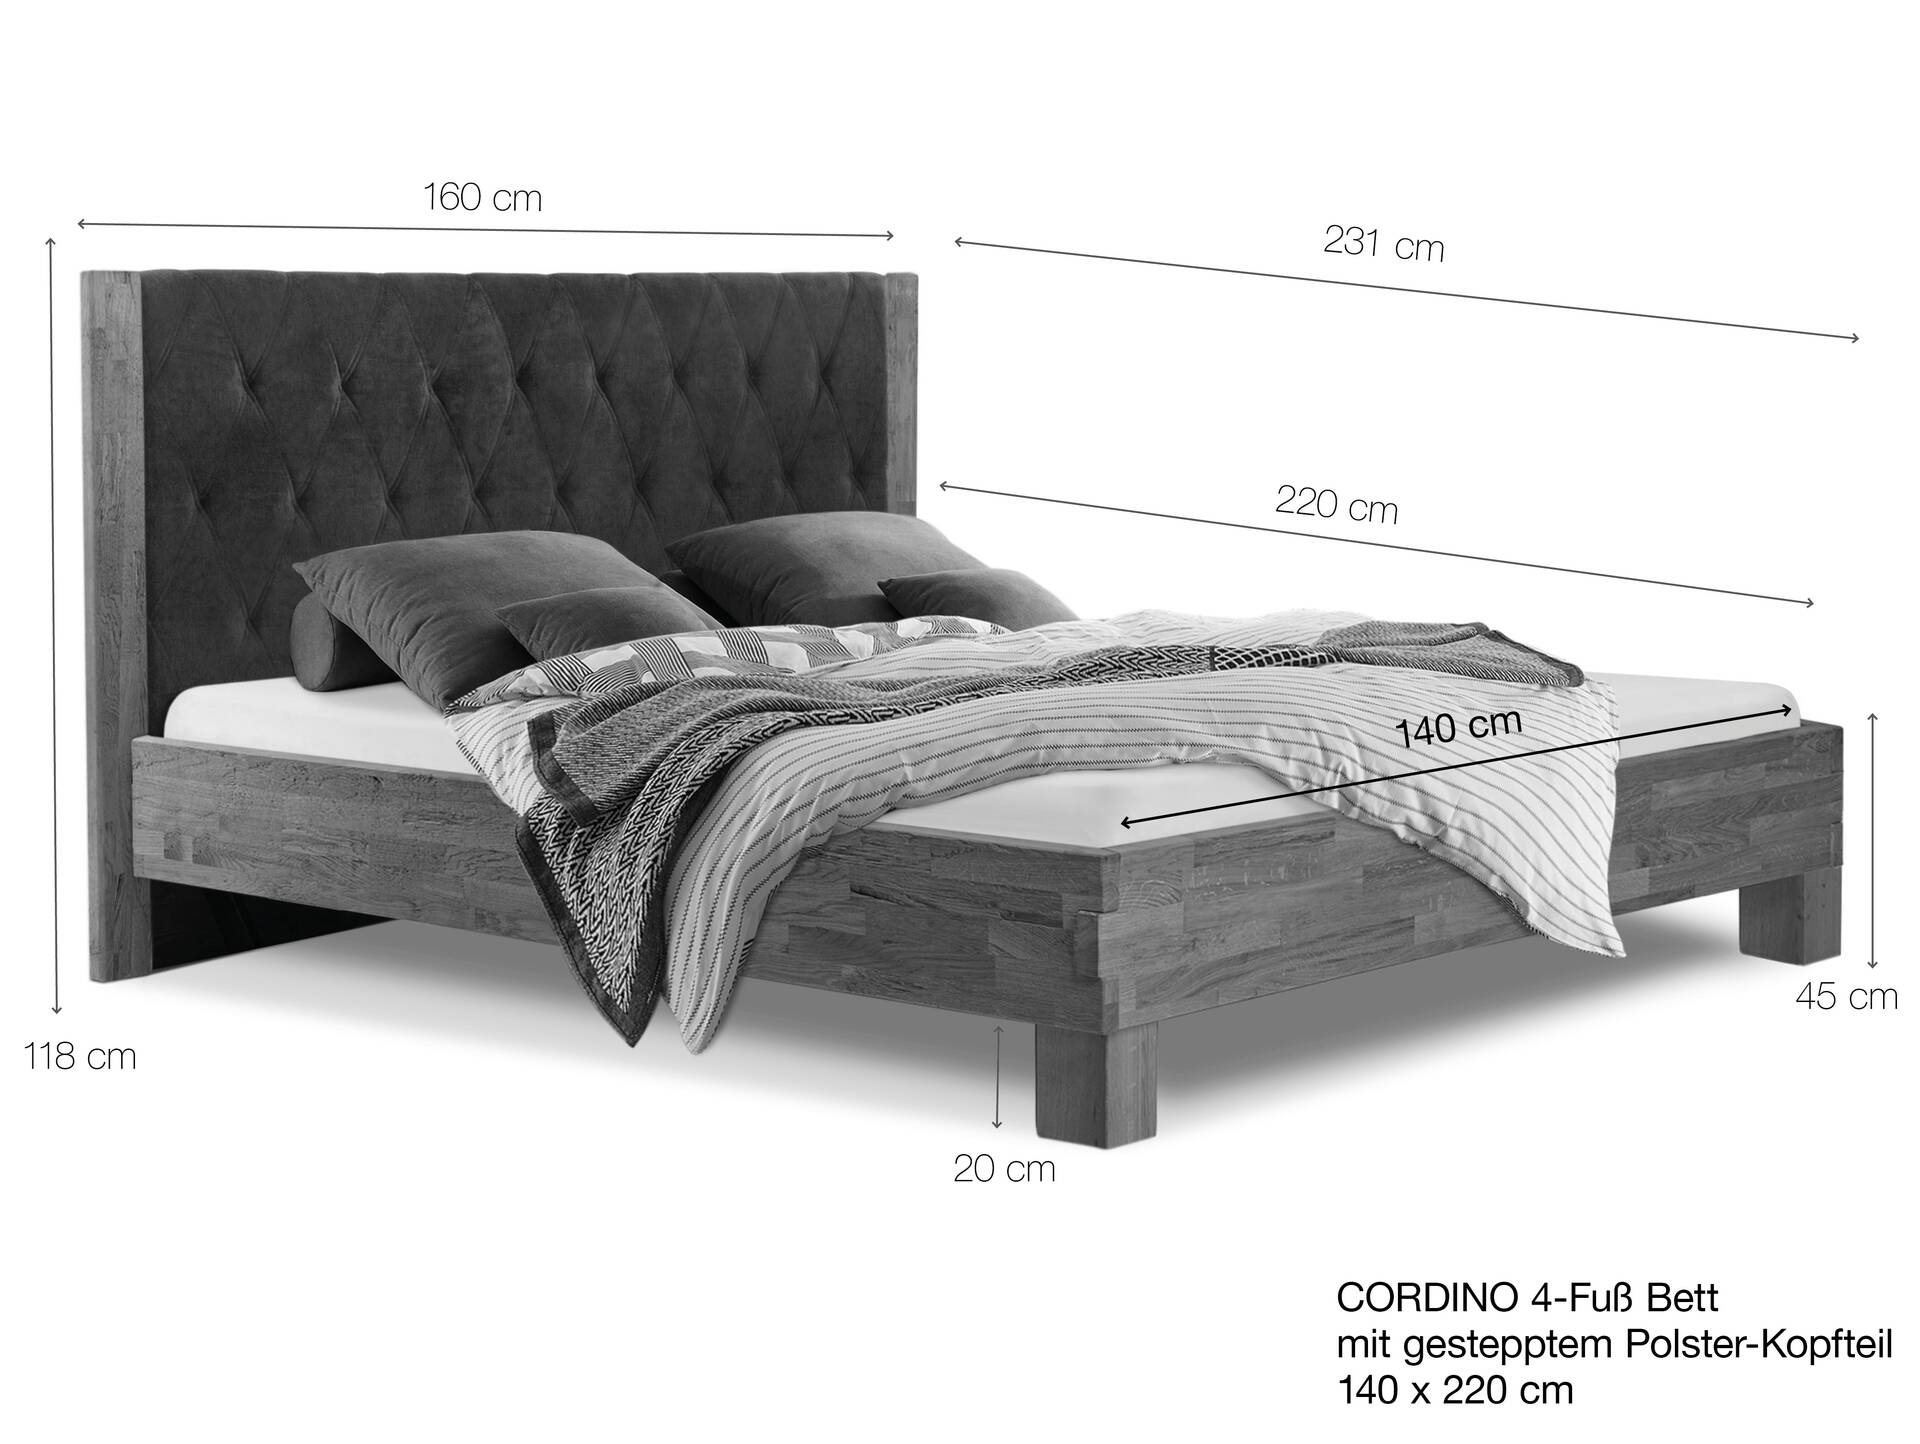 CORDINO 4-Fuß-Bett aus Eiche mit gestepptem Polster-Kopfteil, Material Massivholz 140 x 220 cm | Eiche unbehandelt | Kunstleder Schwarz | gebürstet